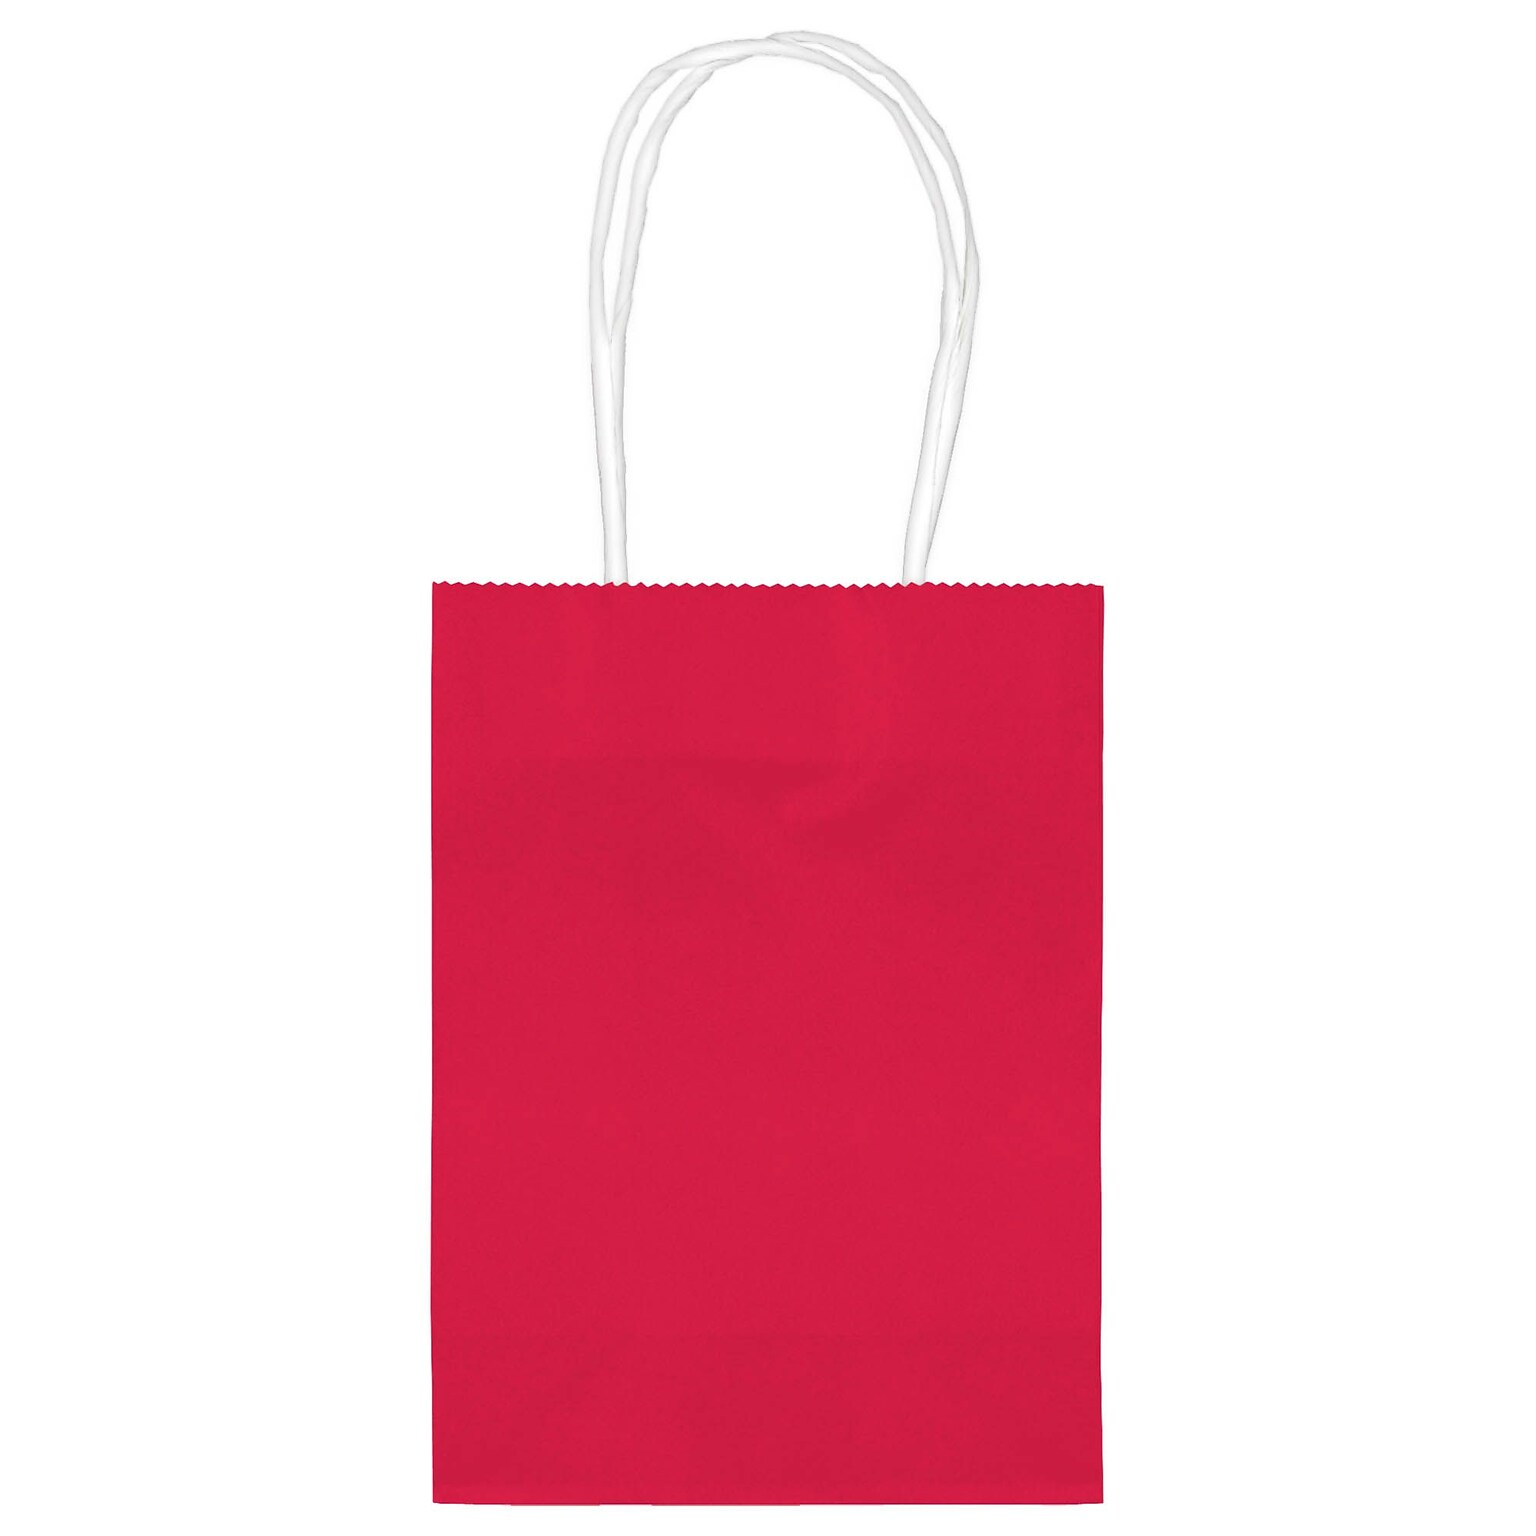 Amscan Kraft Paper Bag, 5 x 4, Red, 48 Bags/Pack (160059.40)